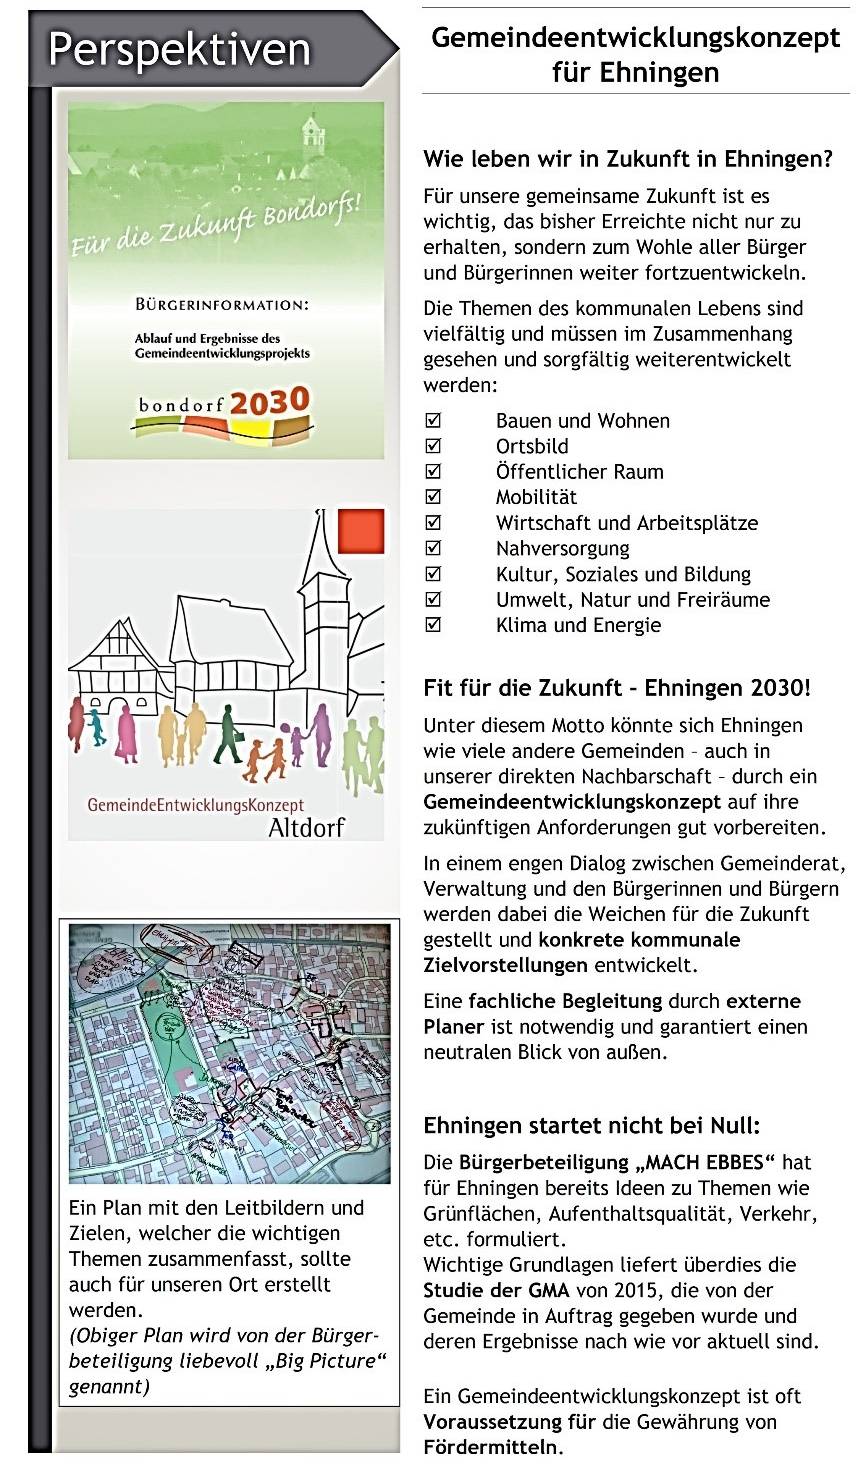 Grafik Perspektiven - Gemeindeentwicklungskonzept für Ehningen - Bild wird mit einem Klick vergrößert